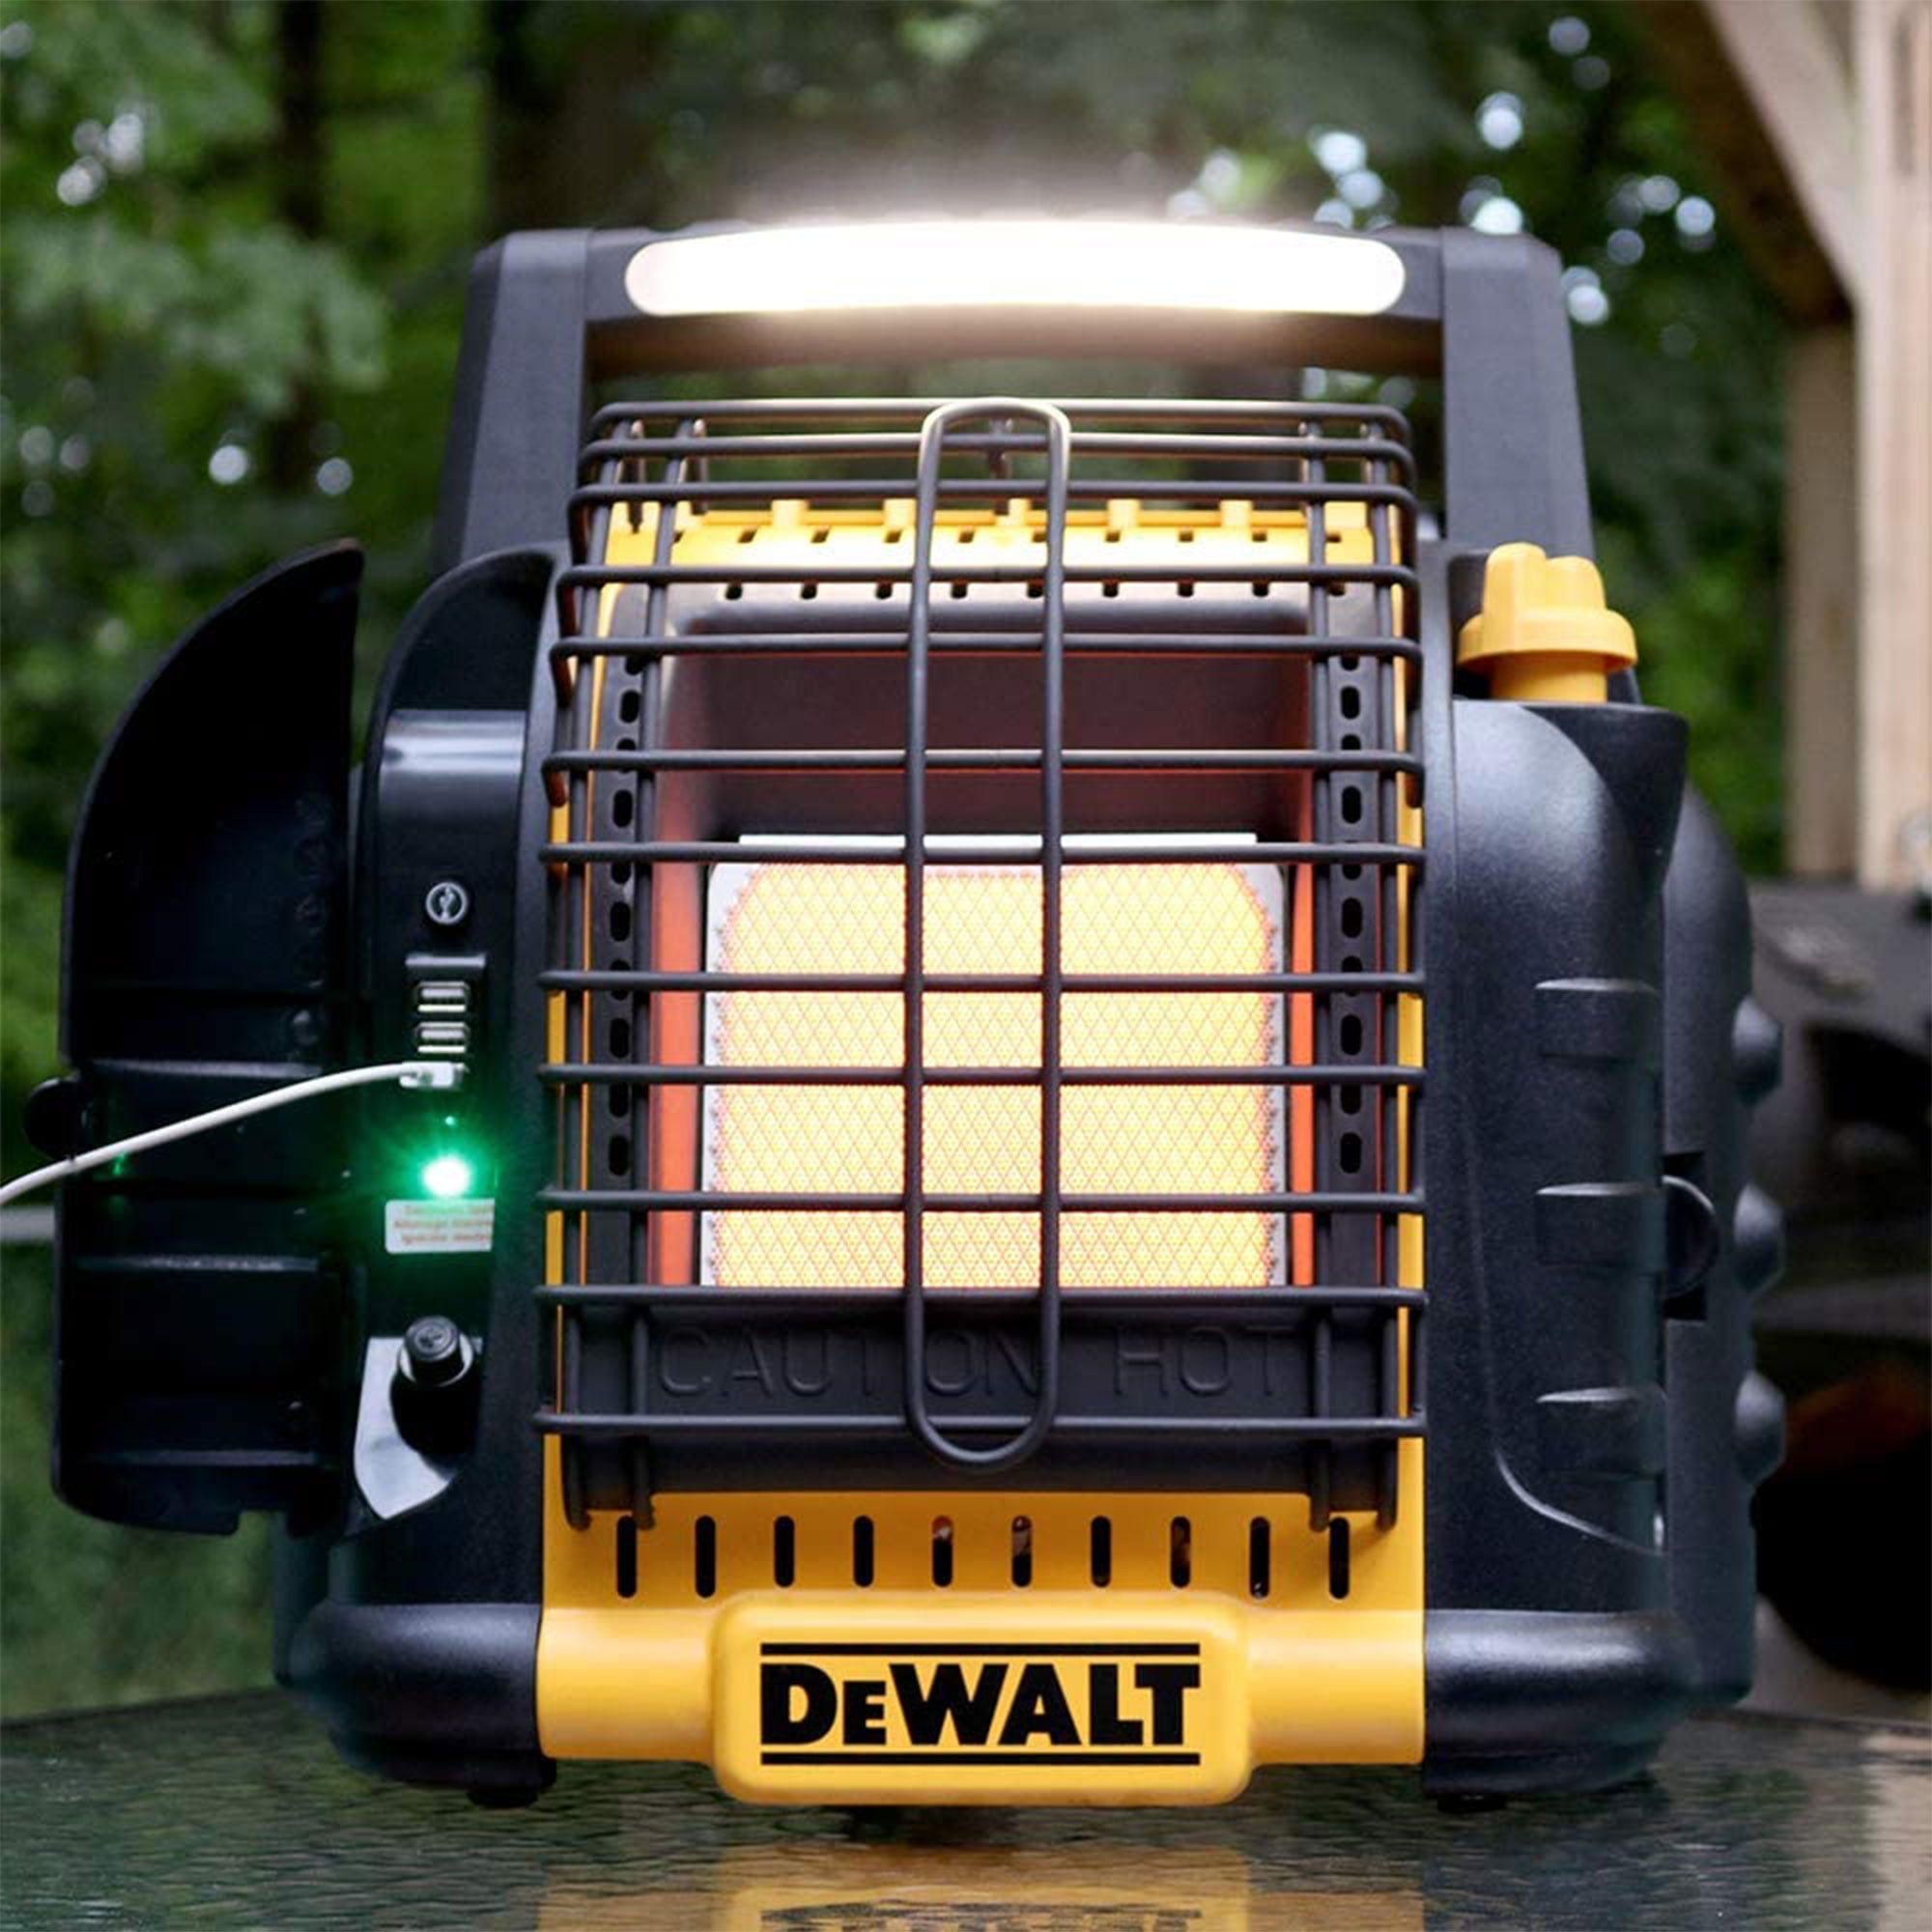 DEWALT F332000 Cordless Portable Buddy Heater, 6000 to 12,000 Btu